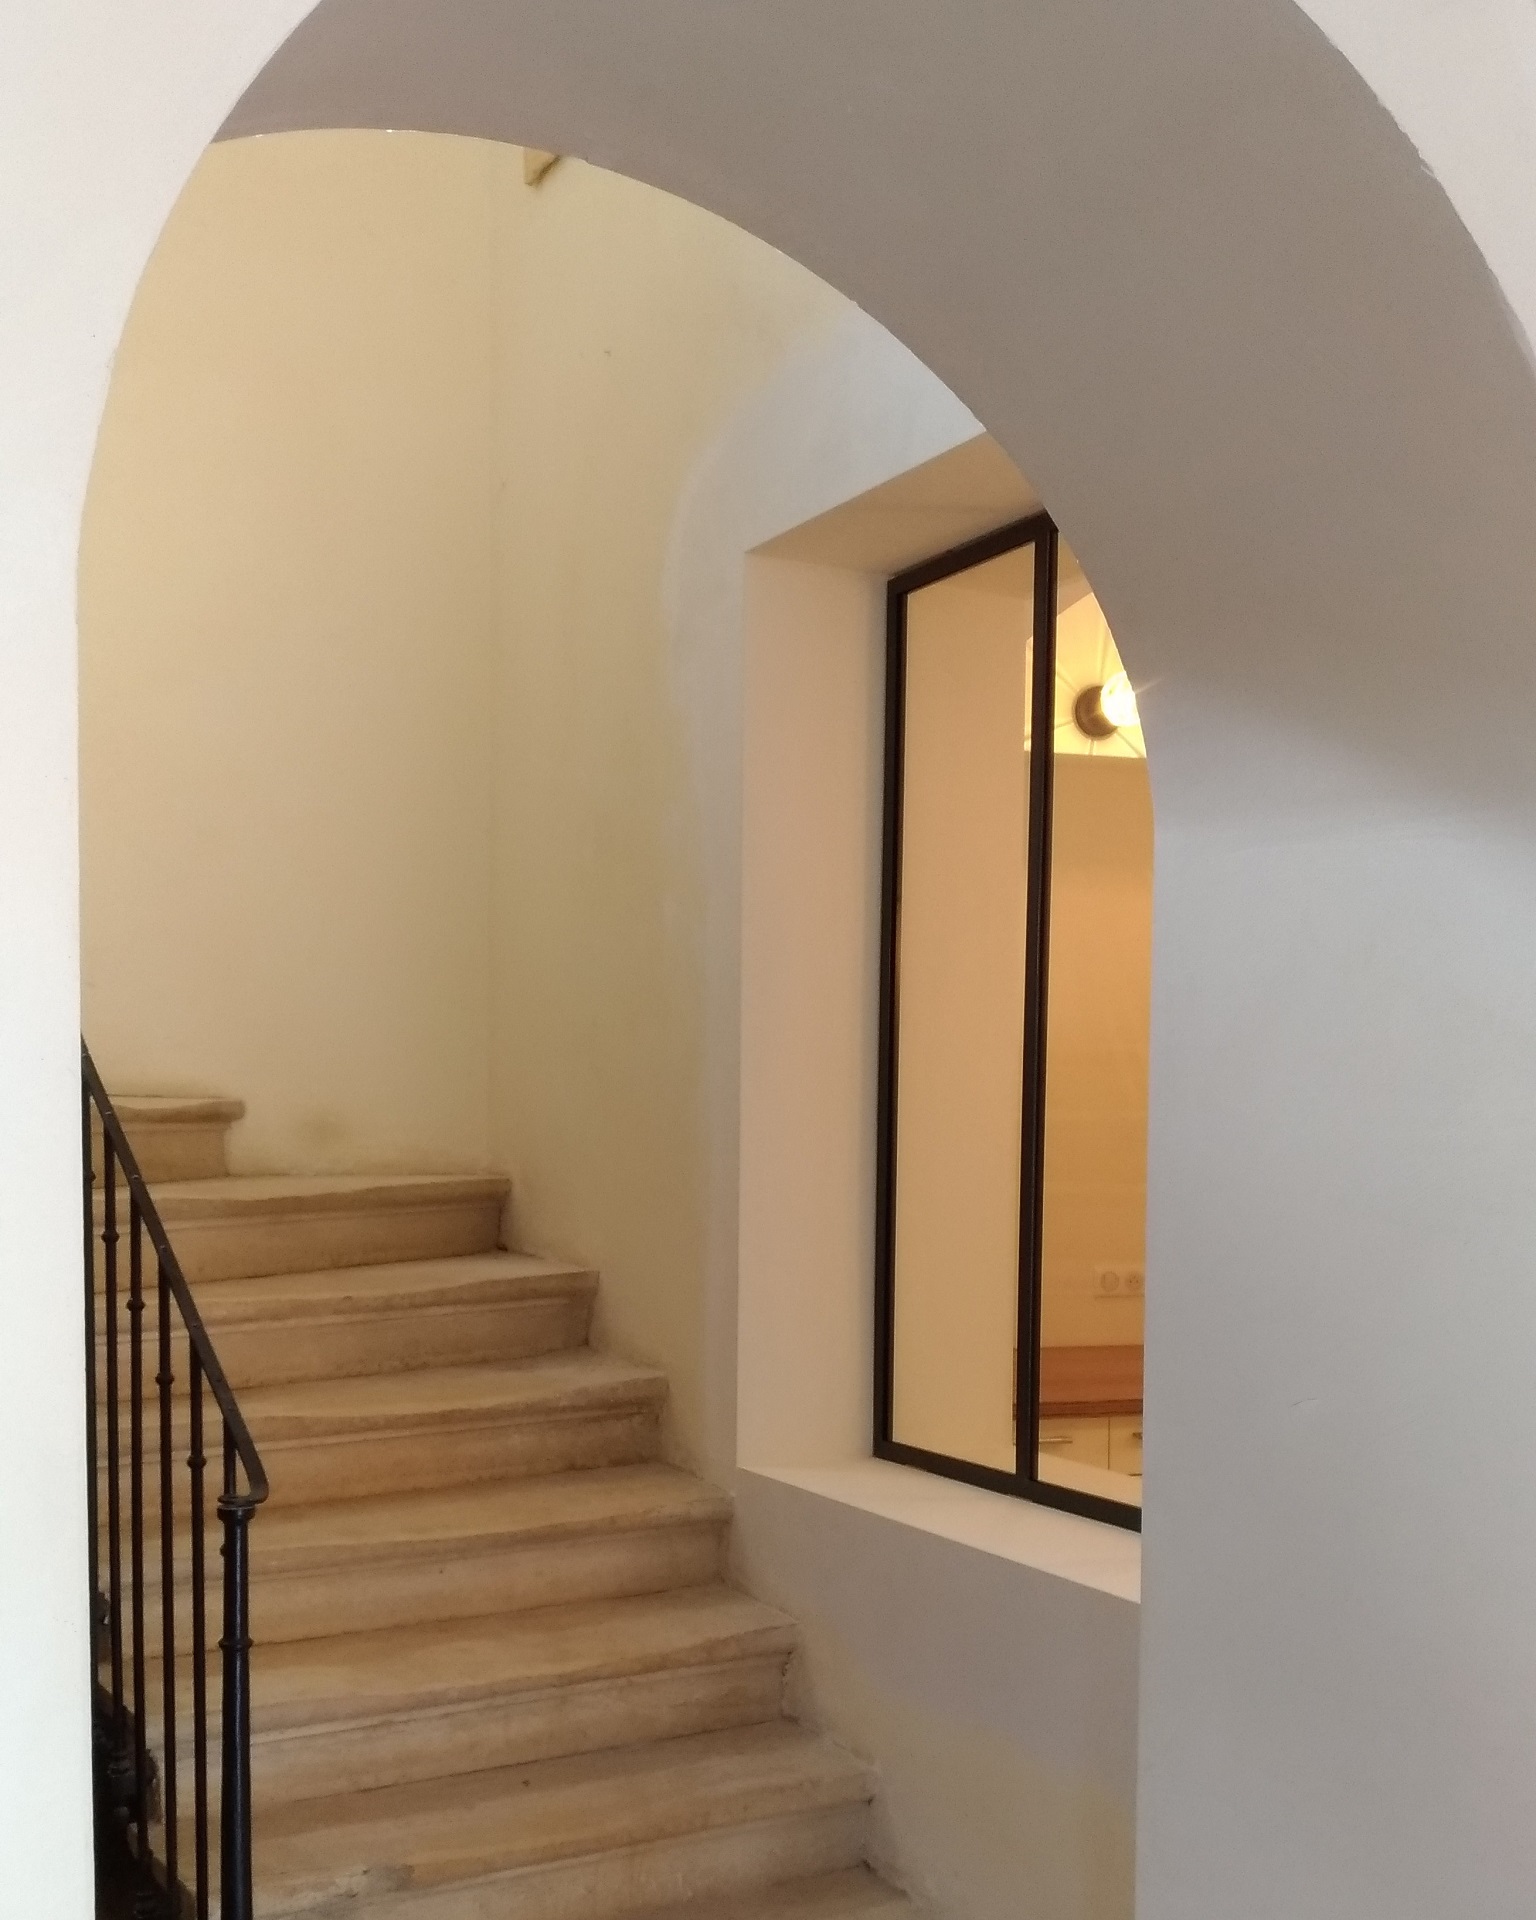 Création d'une verrière entre une cuisine voûtée et un bel escalier en pierre de taille.